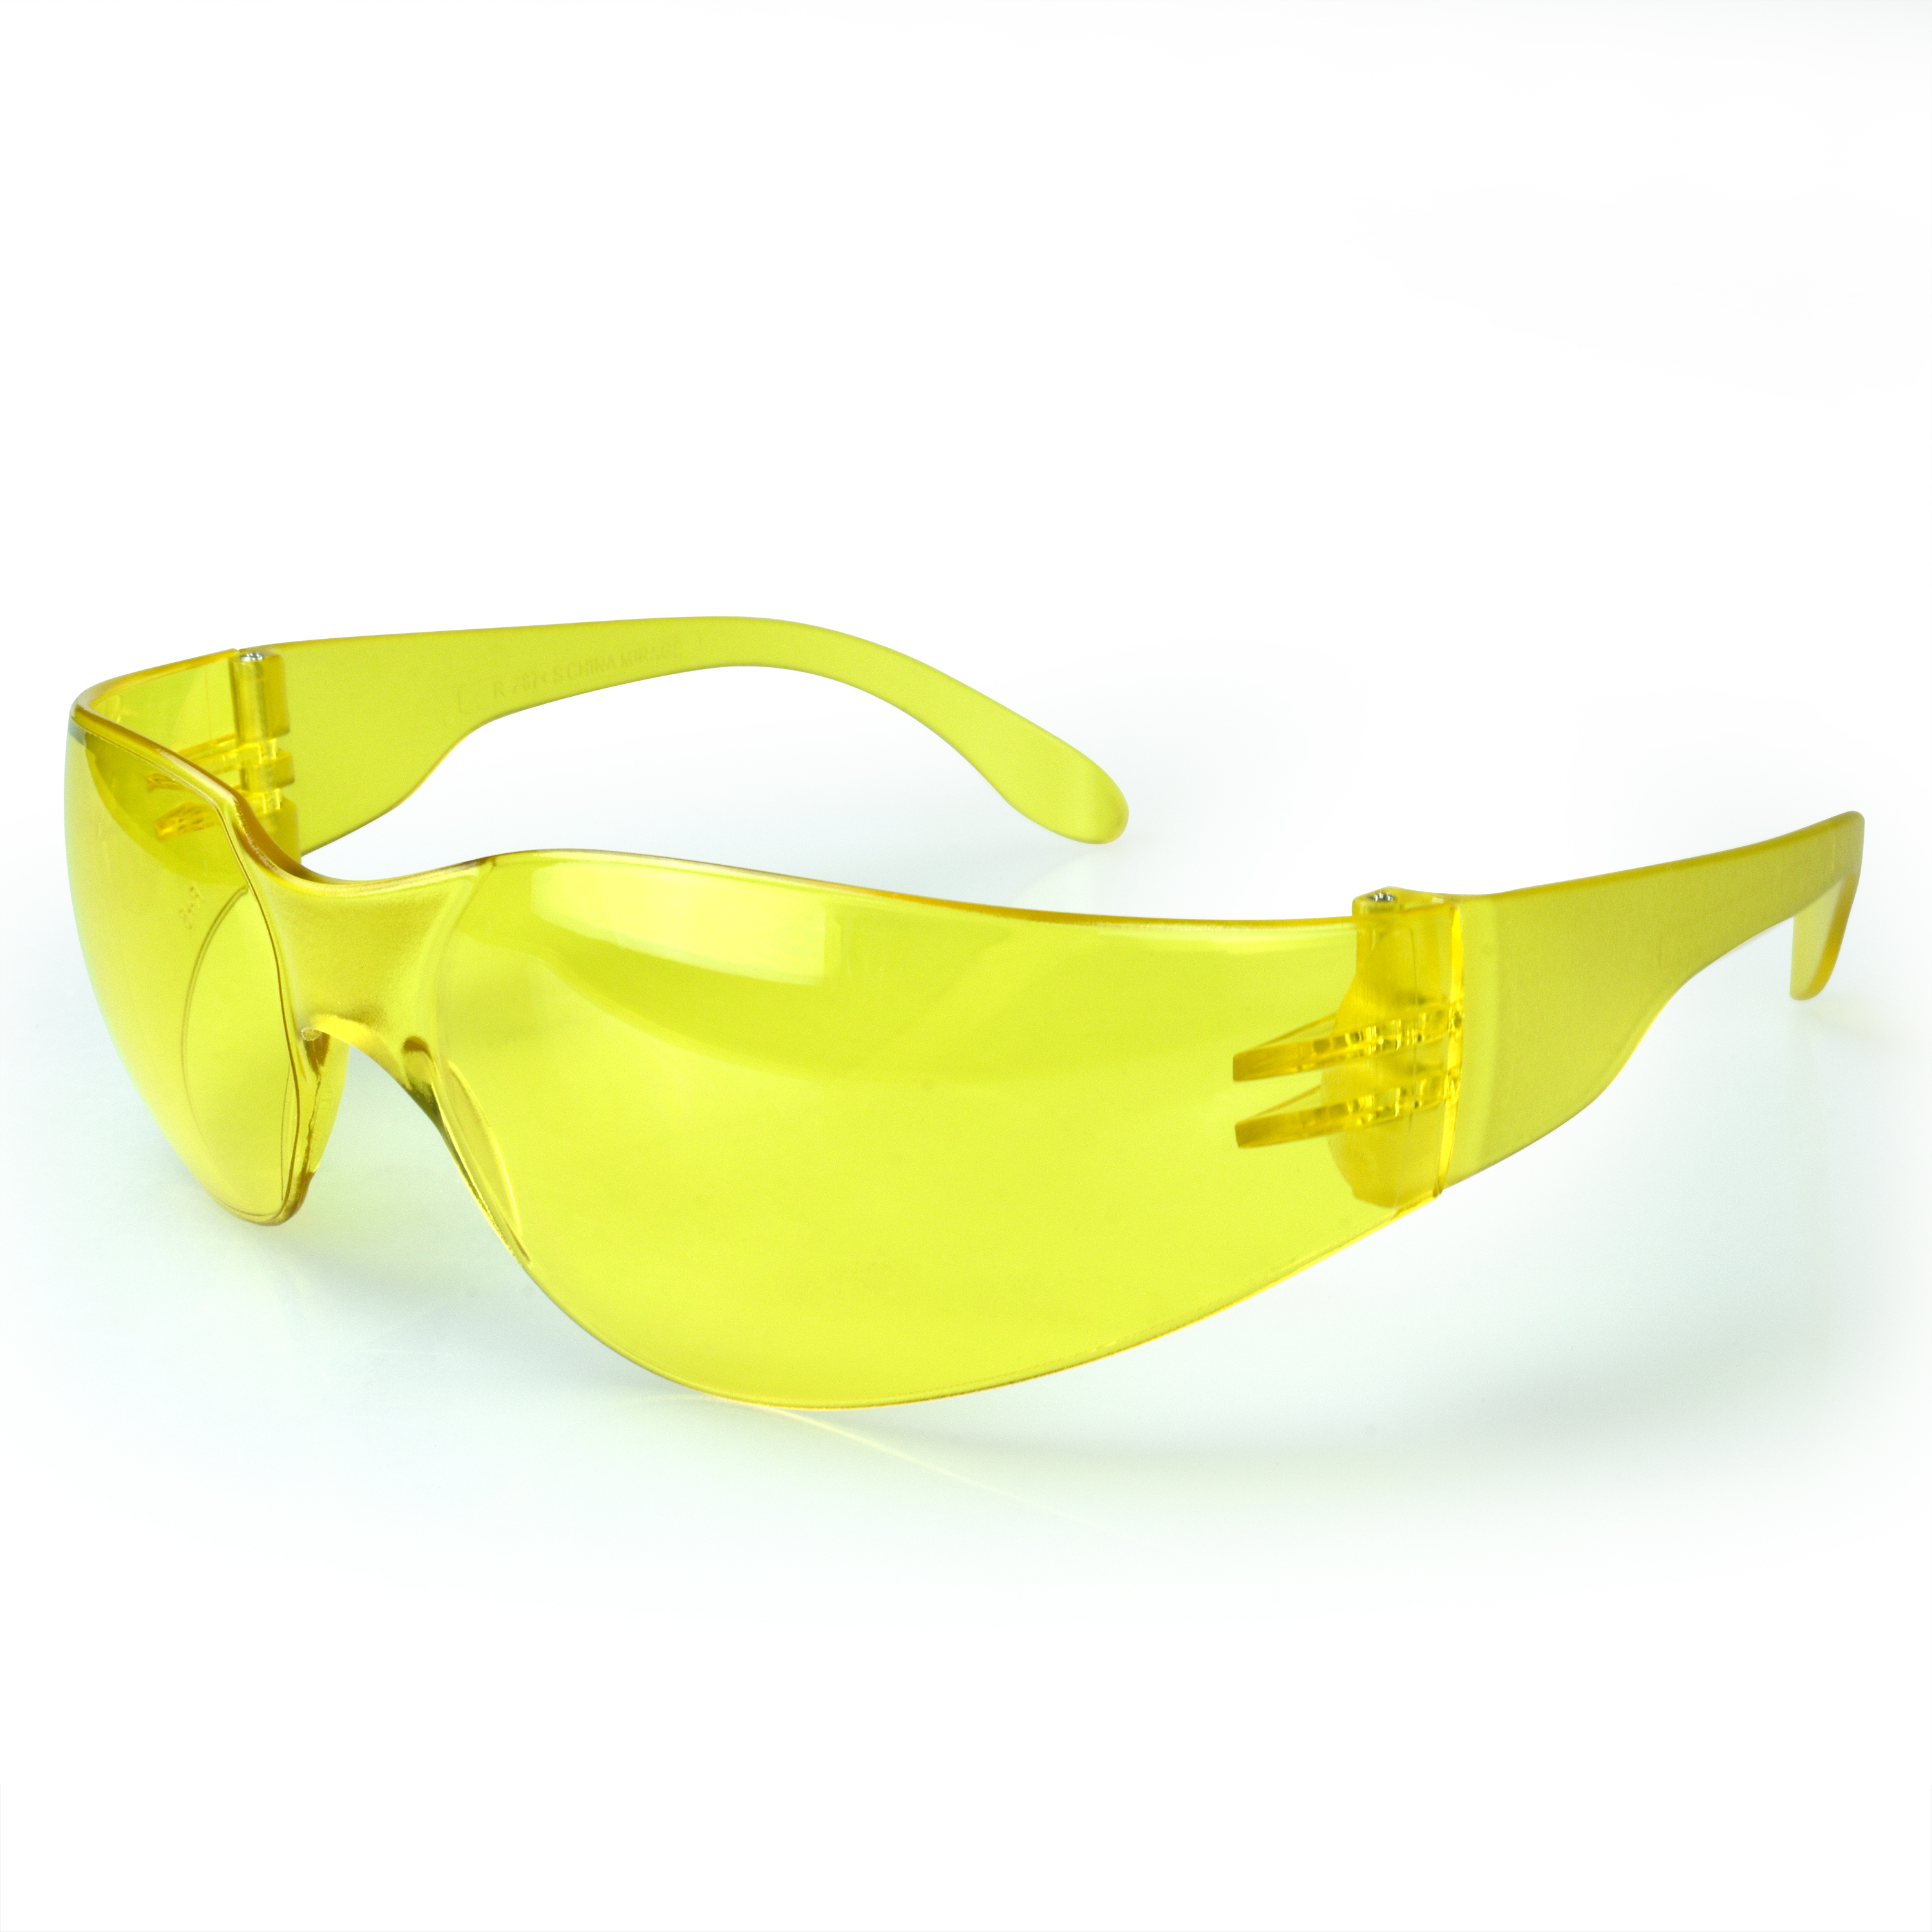 Mirage™ Safety Eyewear - Amber Frame - Amber Lens